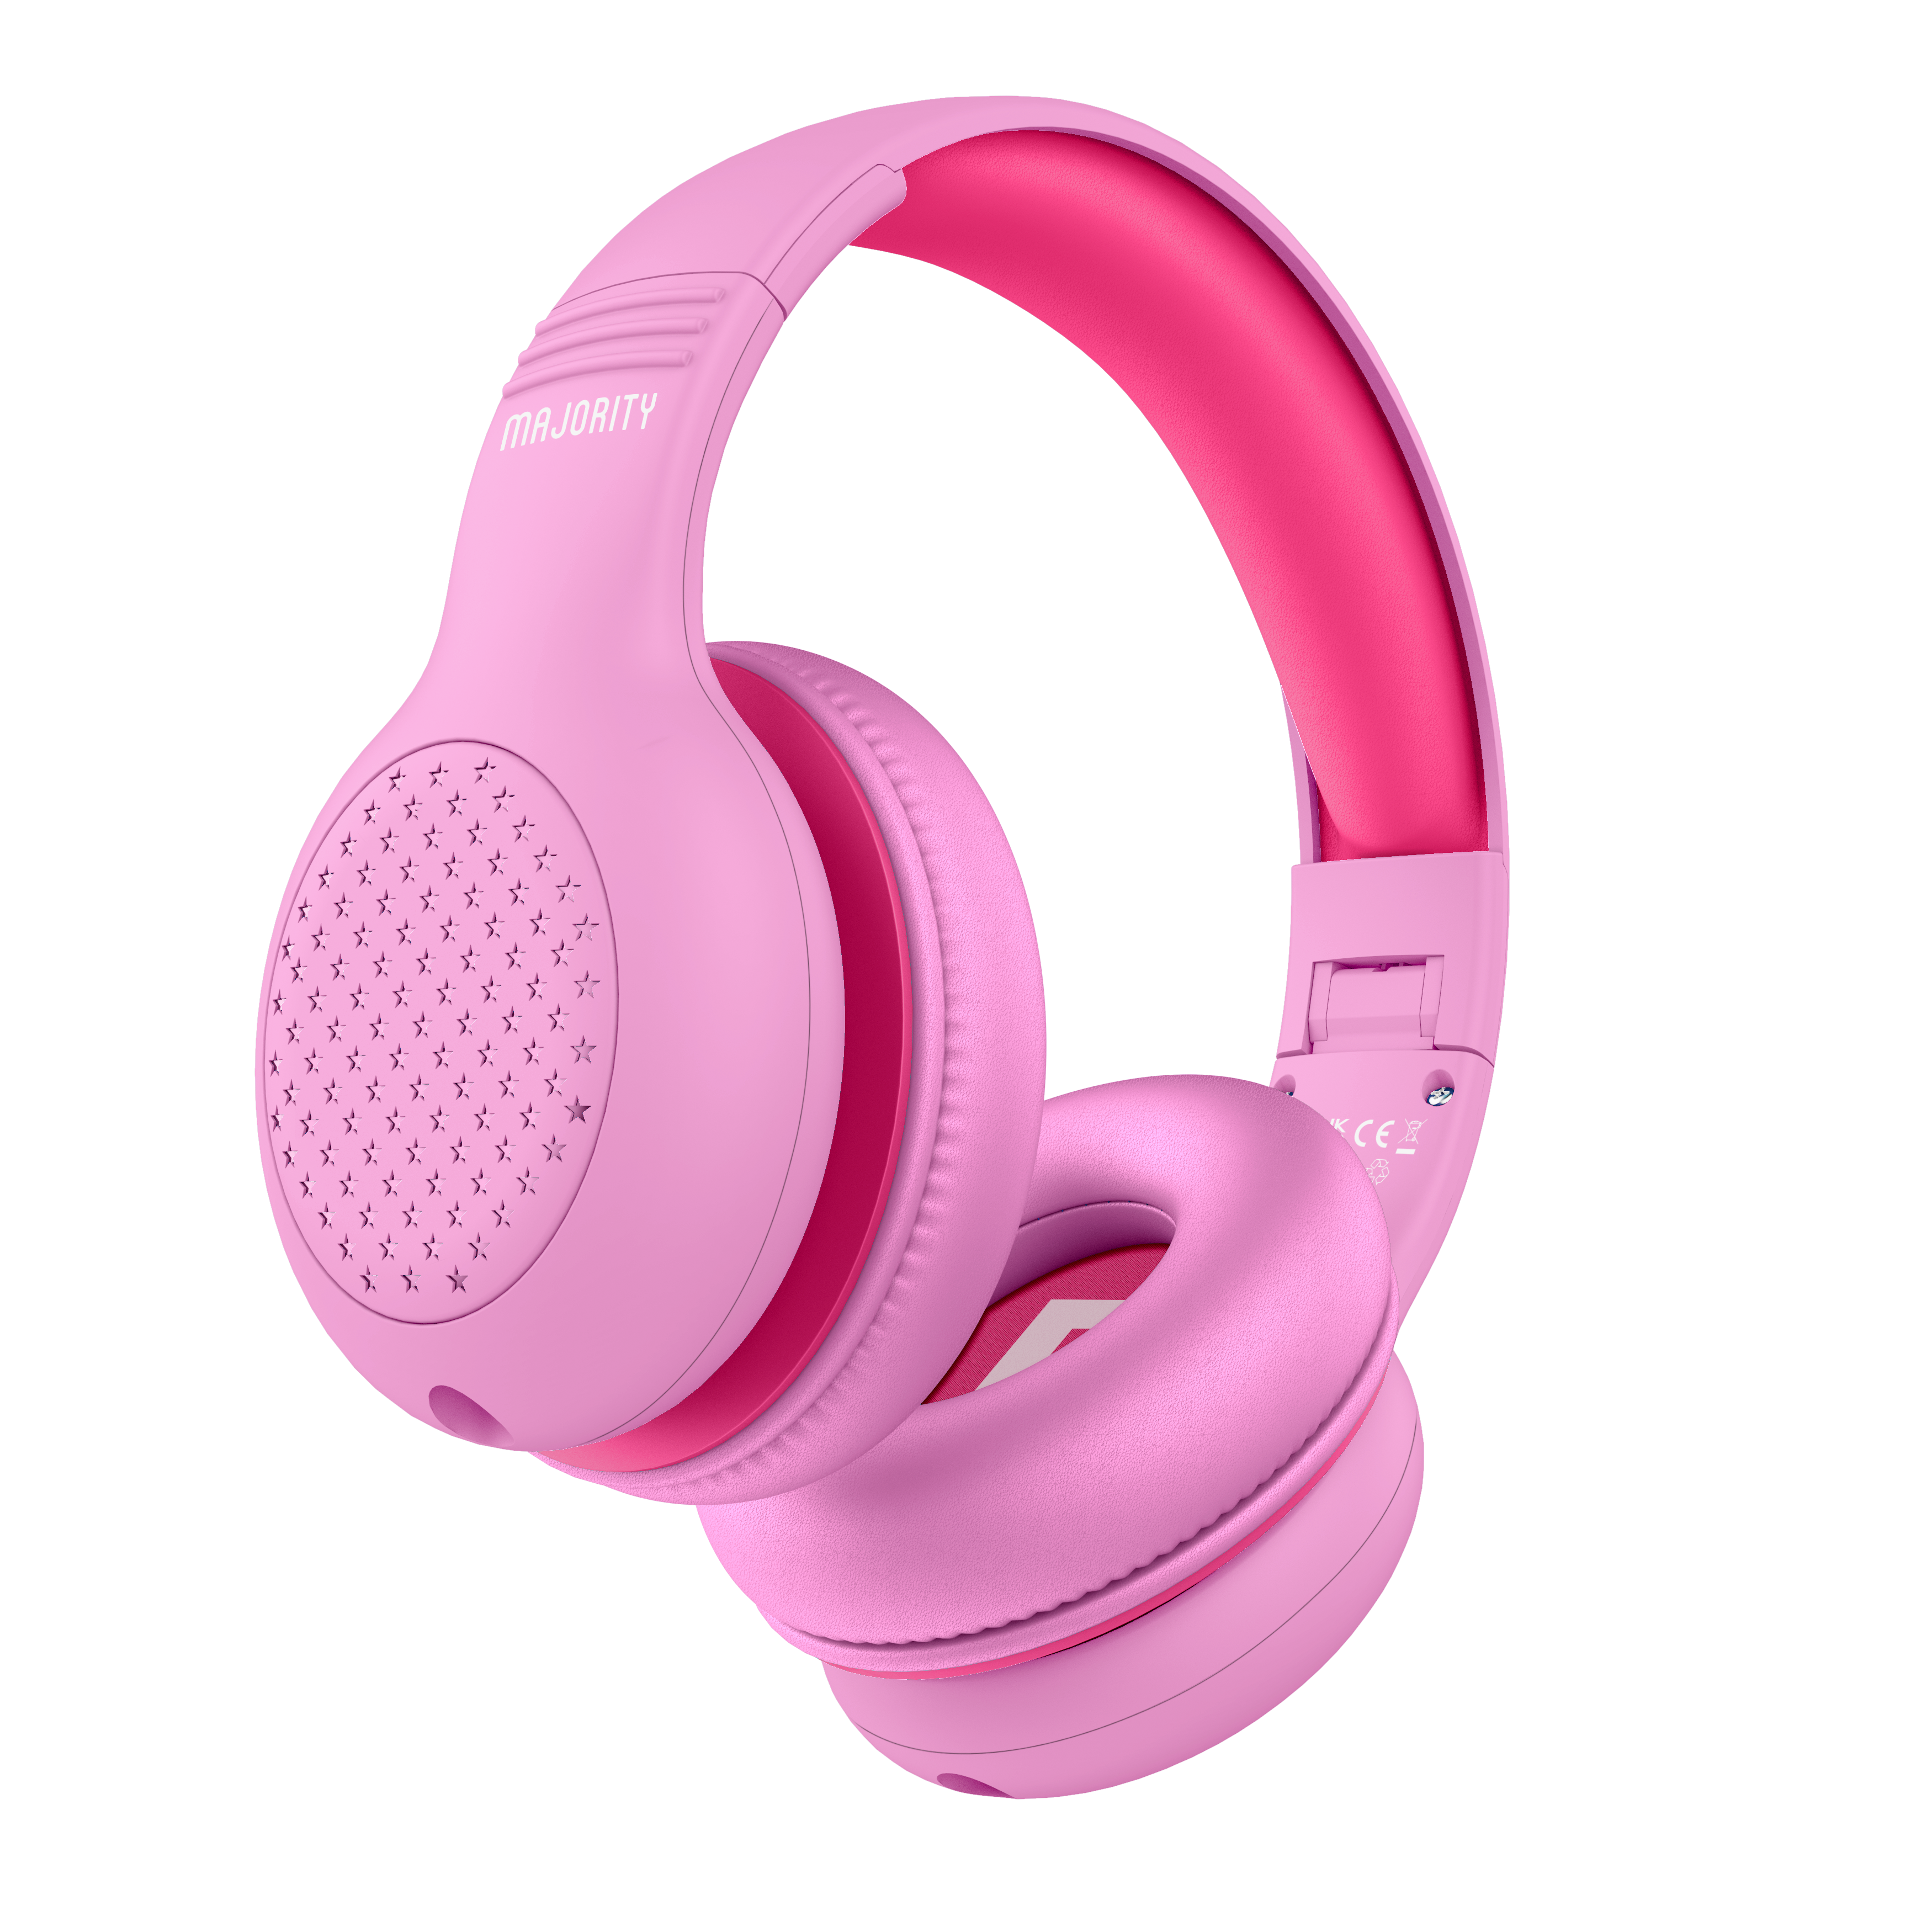 Majority Superstar Kids Headphones - Pink 1